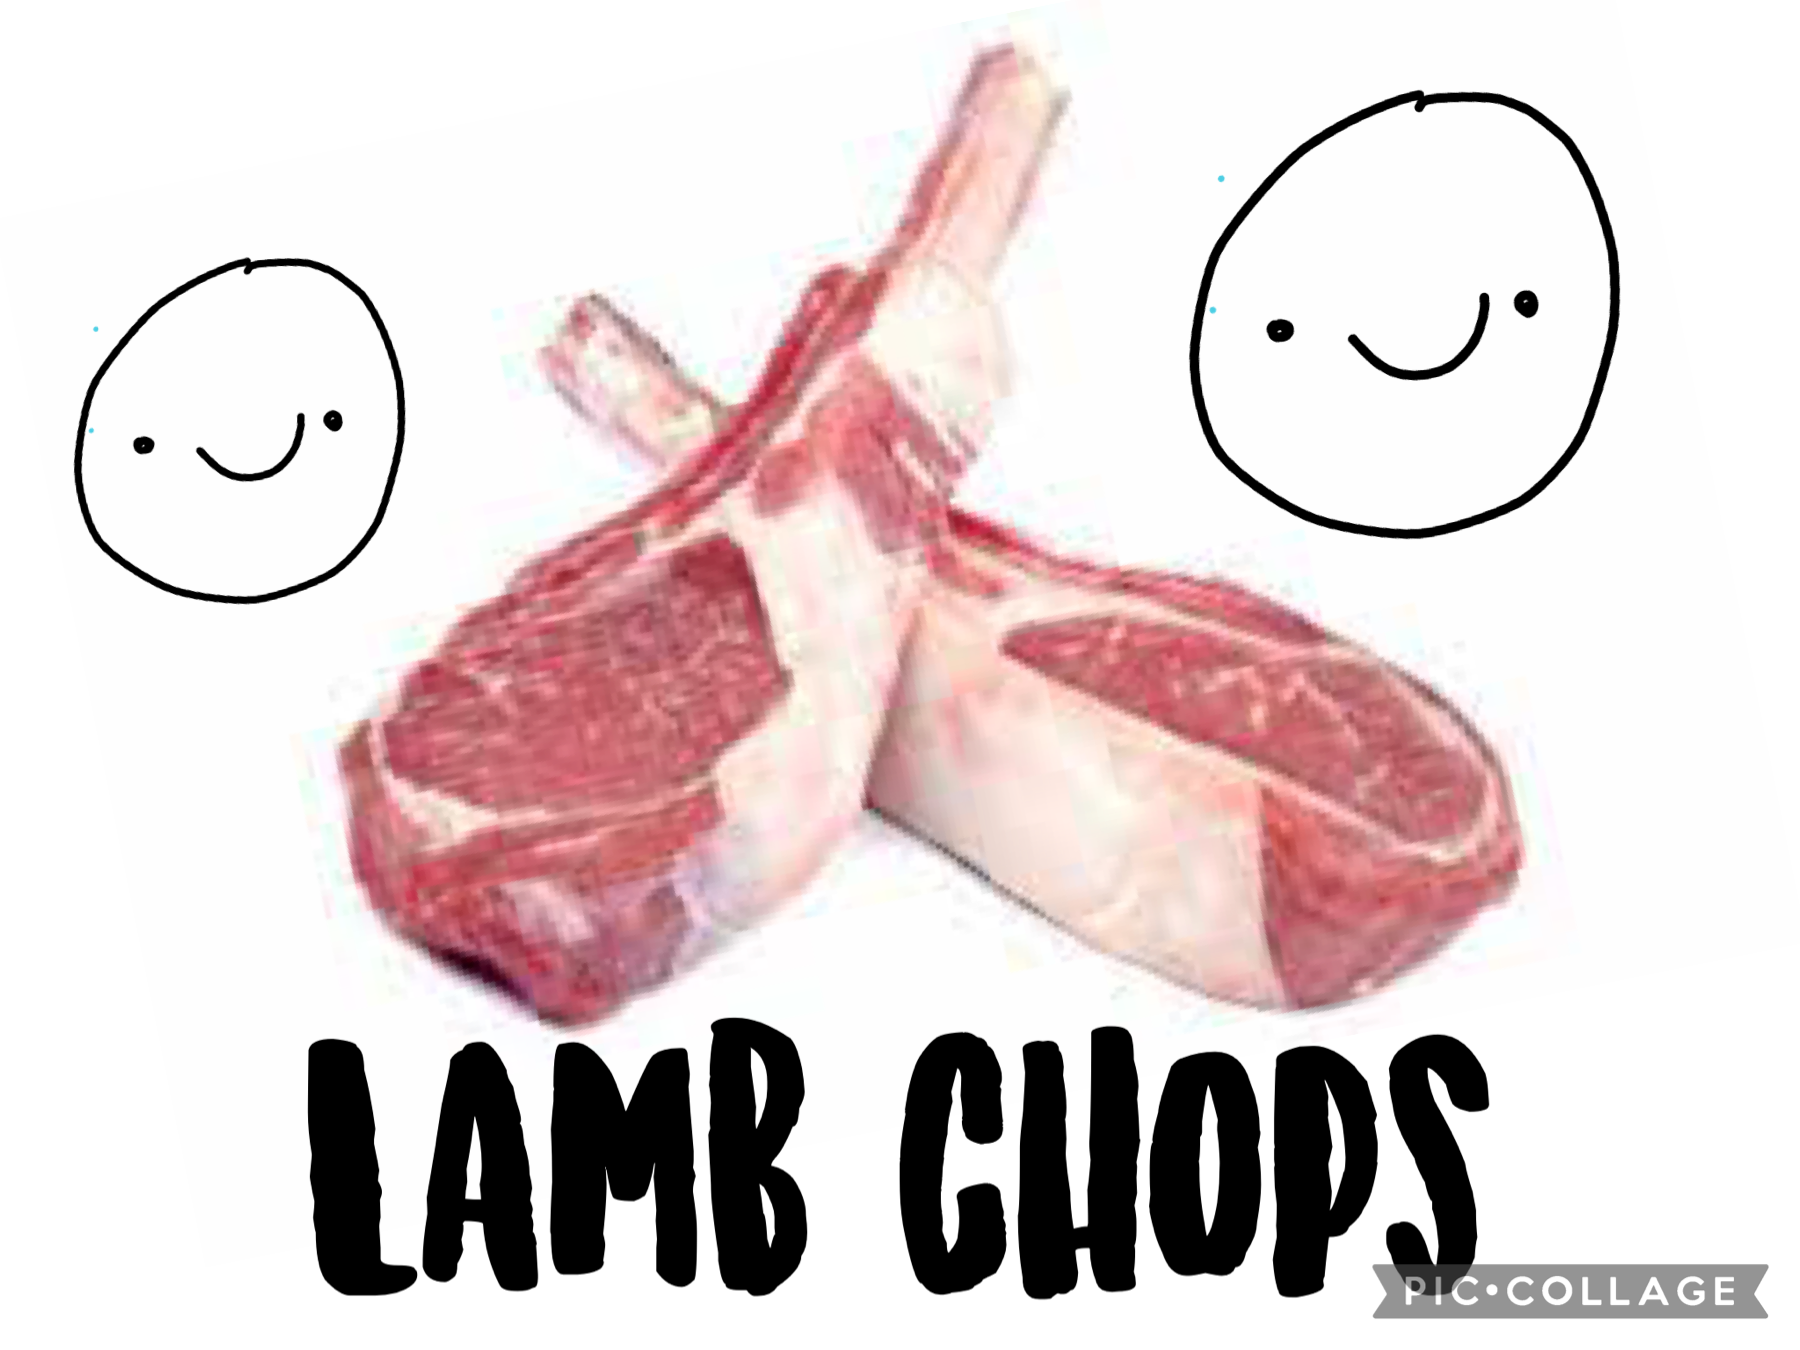 Lamb chos